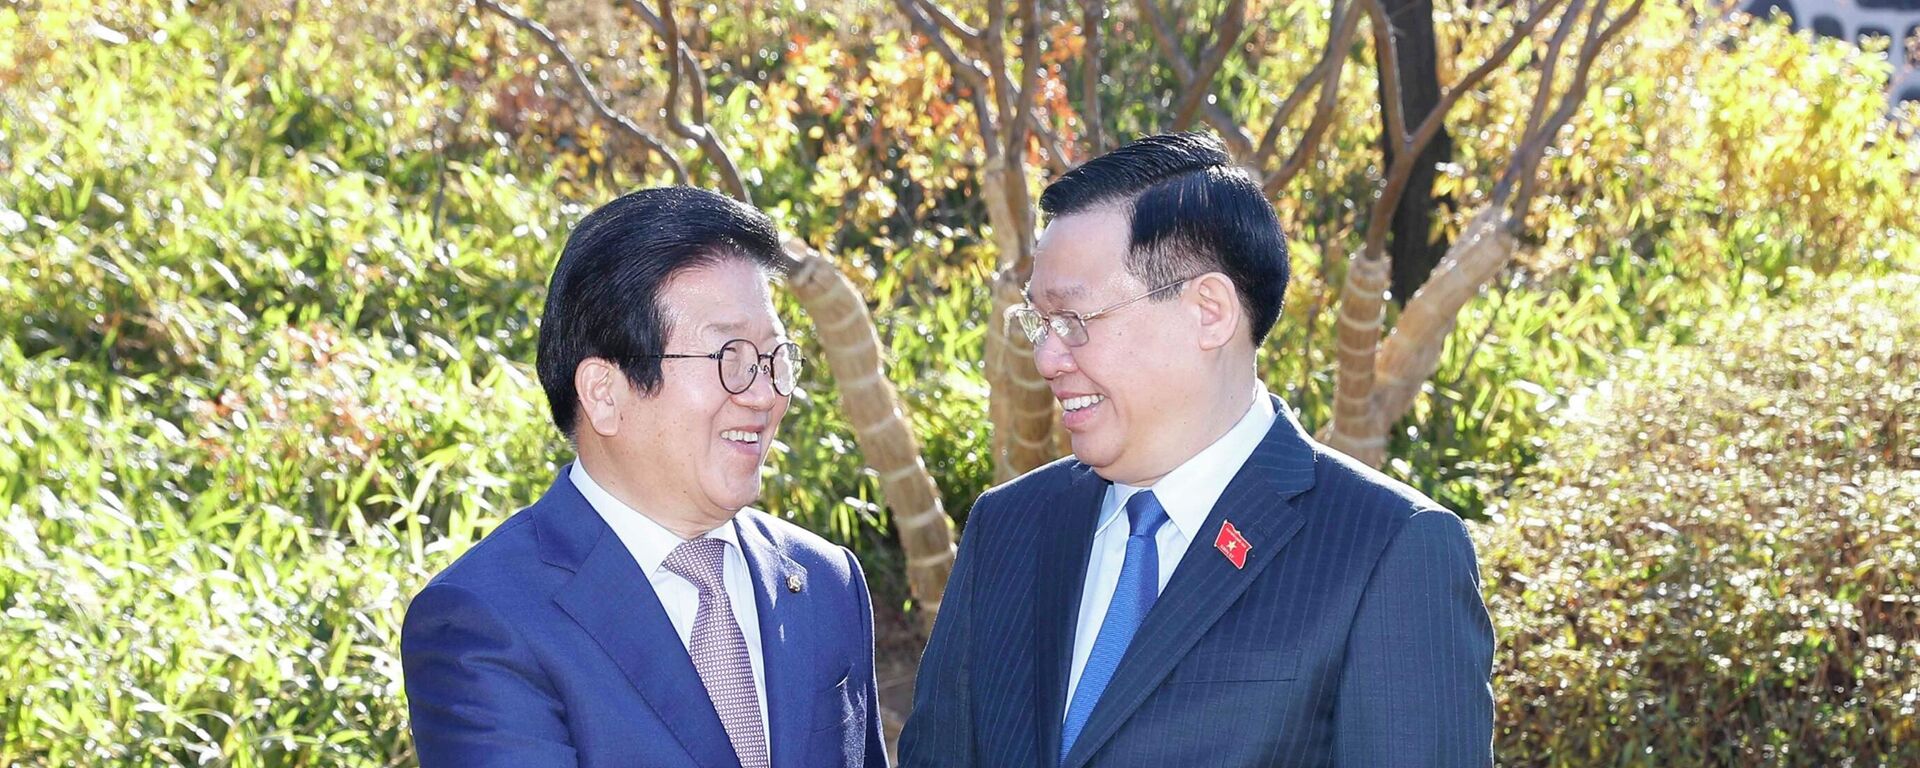 Chủ tịch Quốc hội Vương Đình Huệ gặp Chủ tịch Quốc hội Hàn Quốc Park Byeong Seok - Sputnik Việt Nam, 1920, 14.12.2021